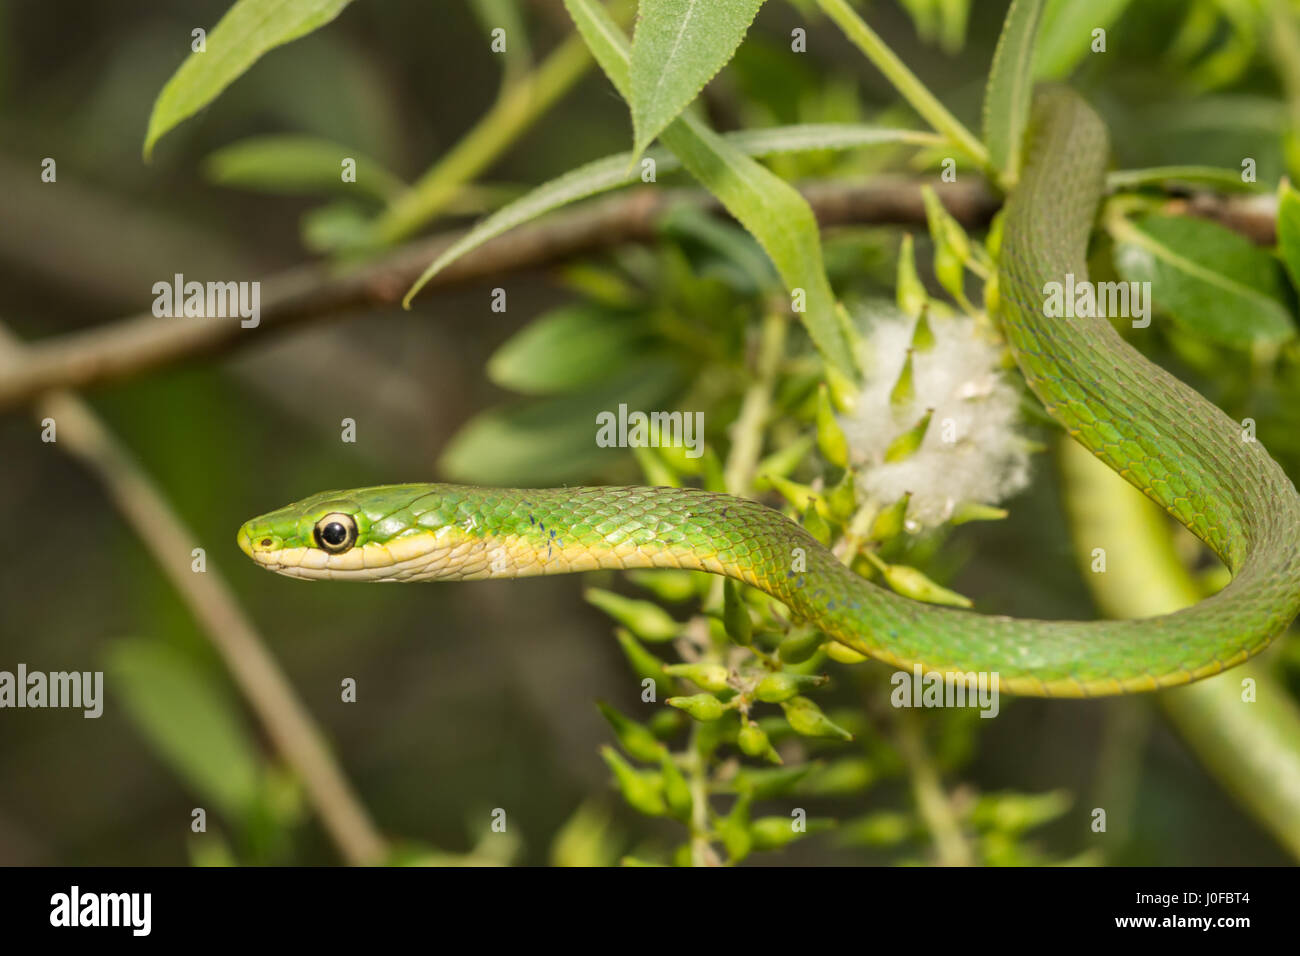 Una áspera serpiente verde de escalada en un árbol pequeño en Florida. Foto de stock